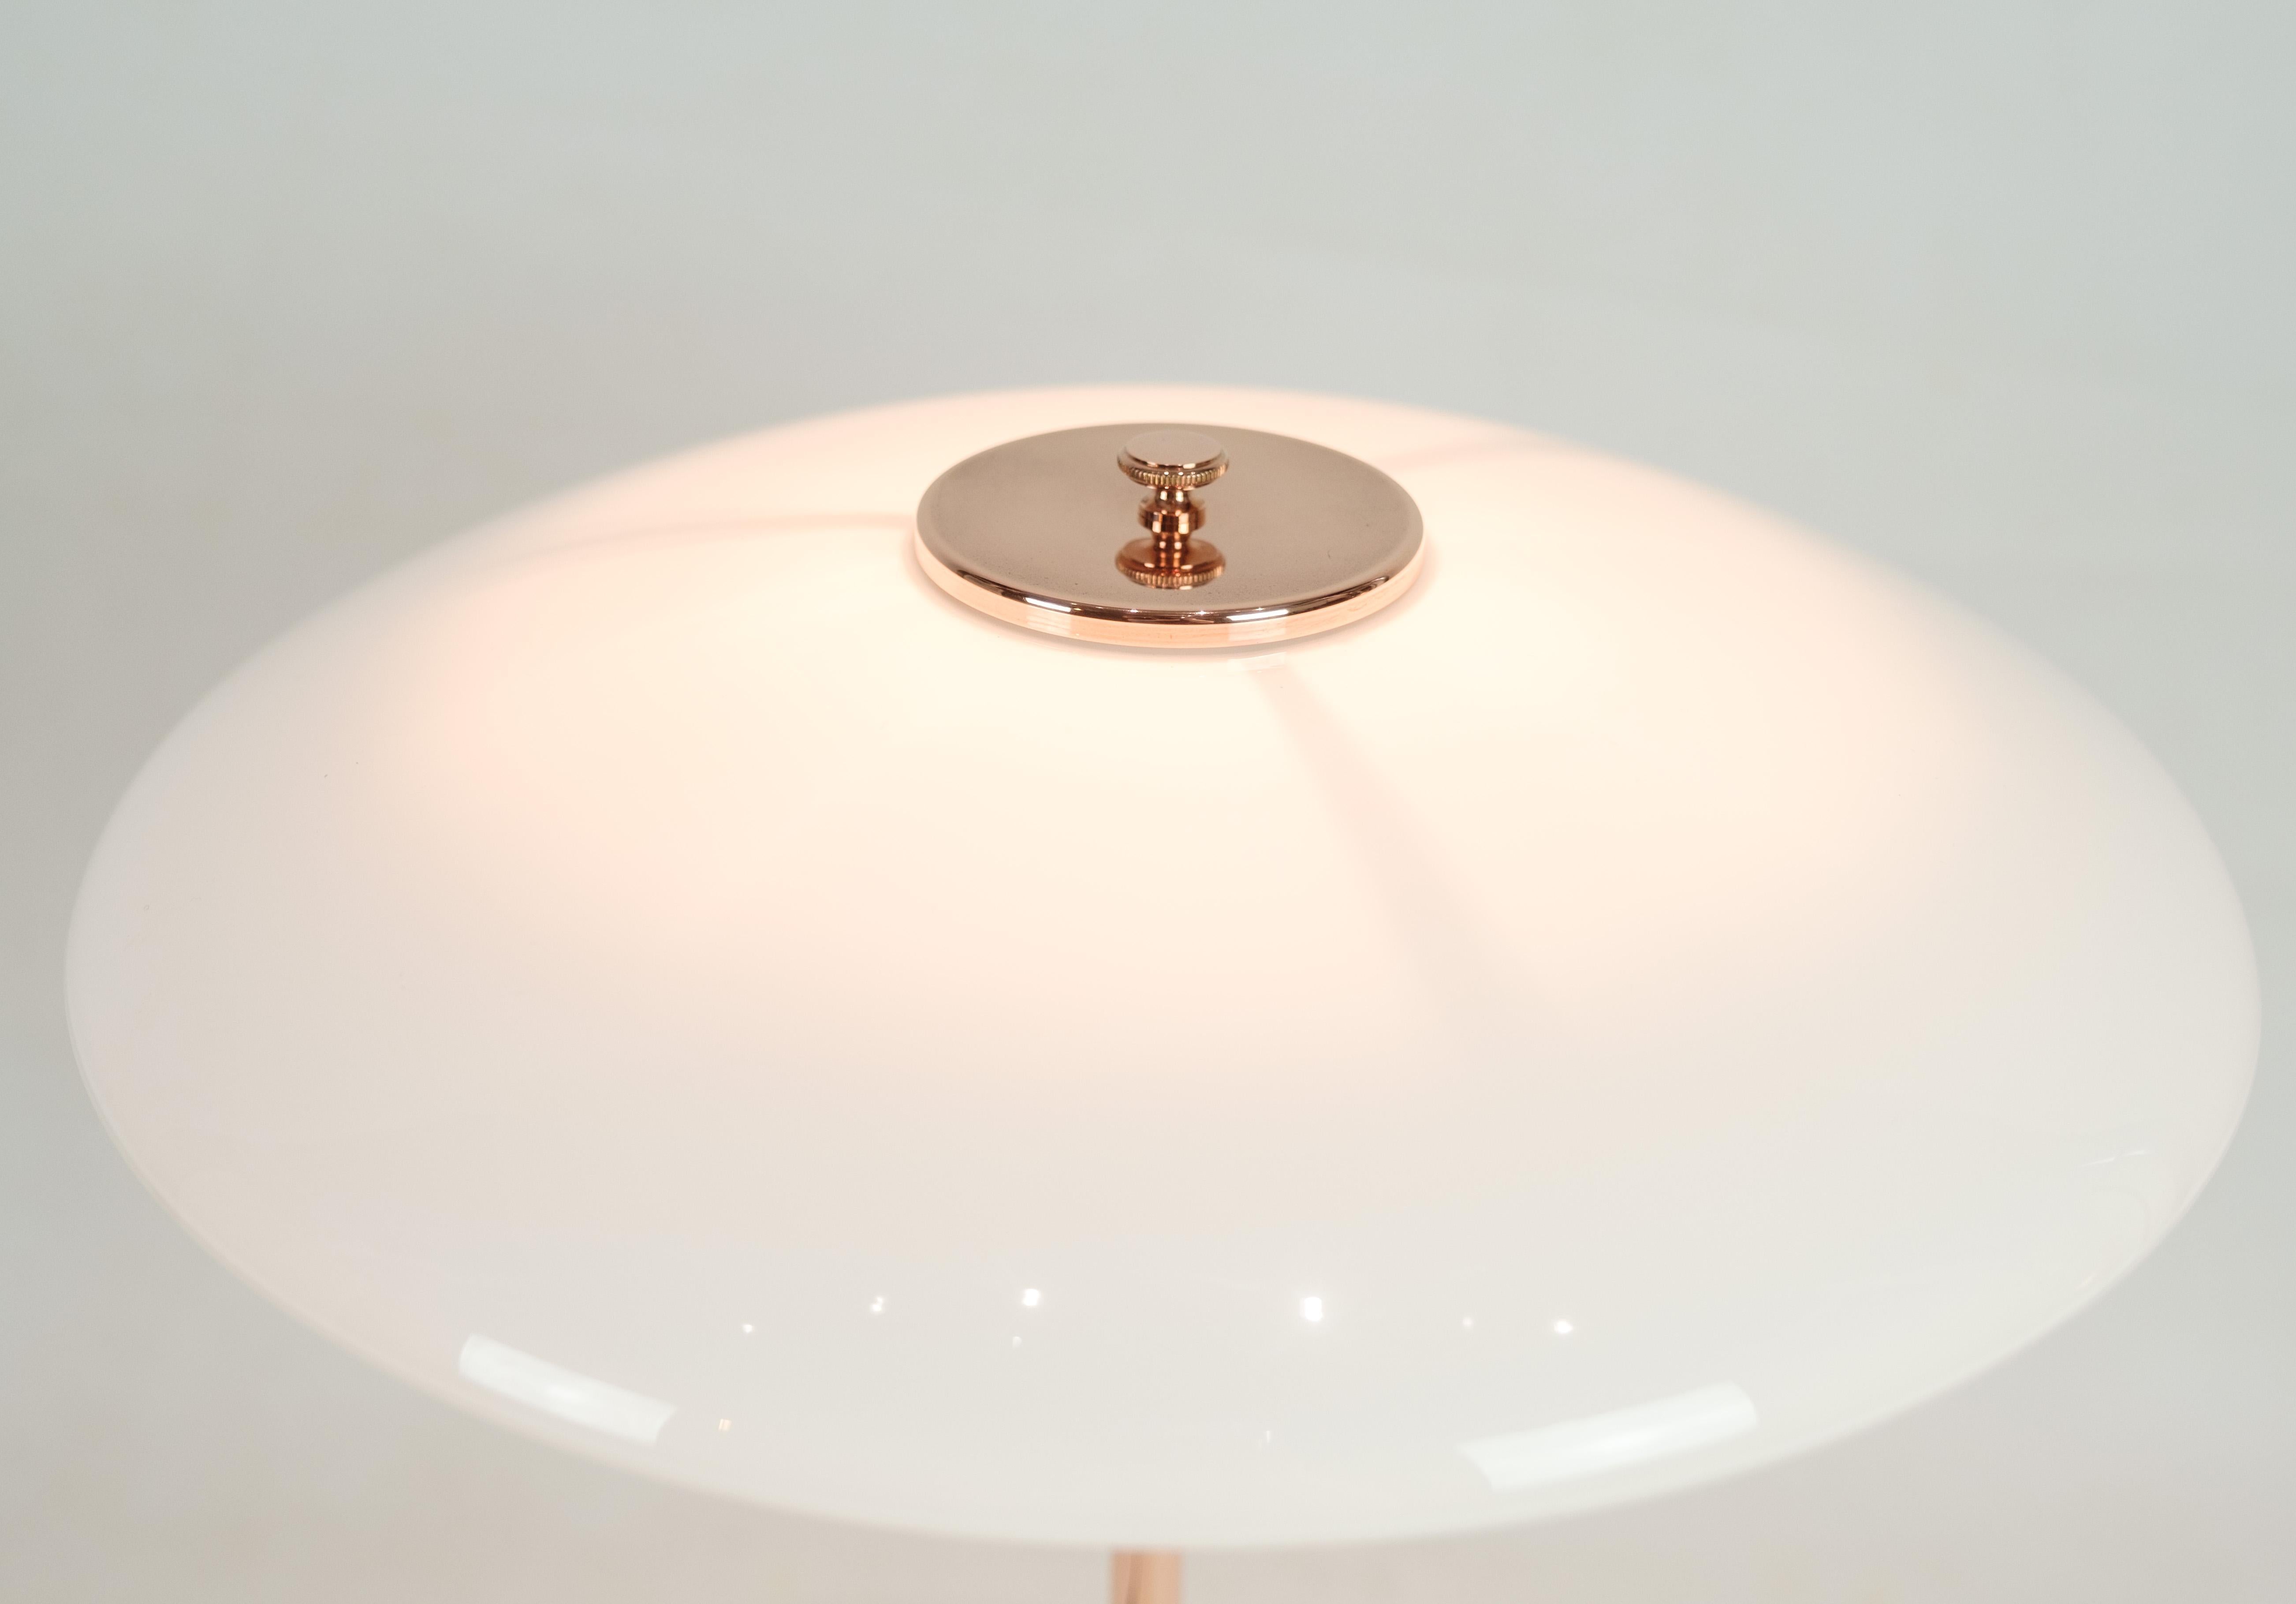 Lampe de table PH, modèle PH3½-2½, édition limitée, conçue par Poul Henningsen et fabriquée par Louis Poulsen. La lampe est fabriquée en cuivre avec un abat-jour supérieur en cuivre et deux abat-jours inférieurs en verre opalin blanc. Un écran